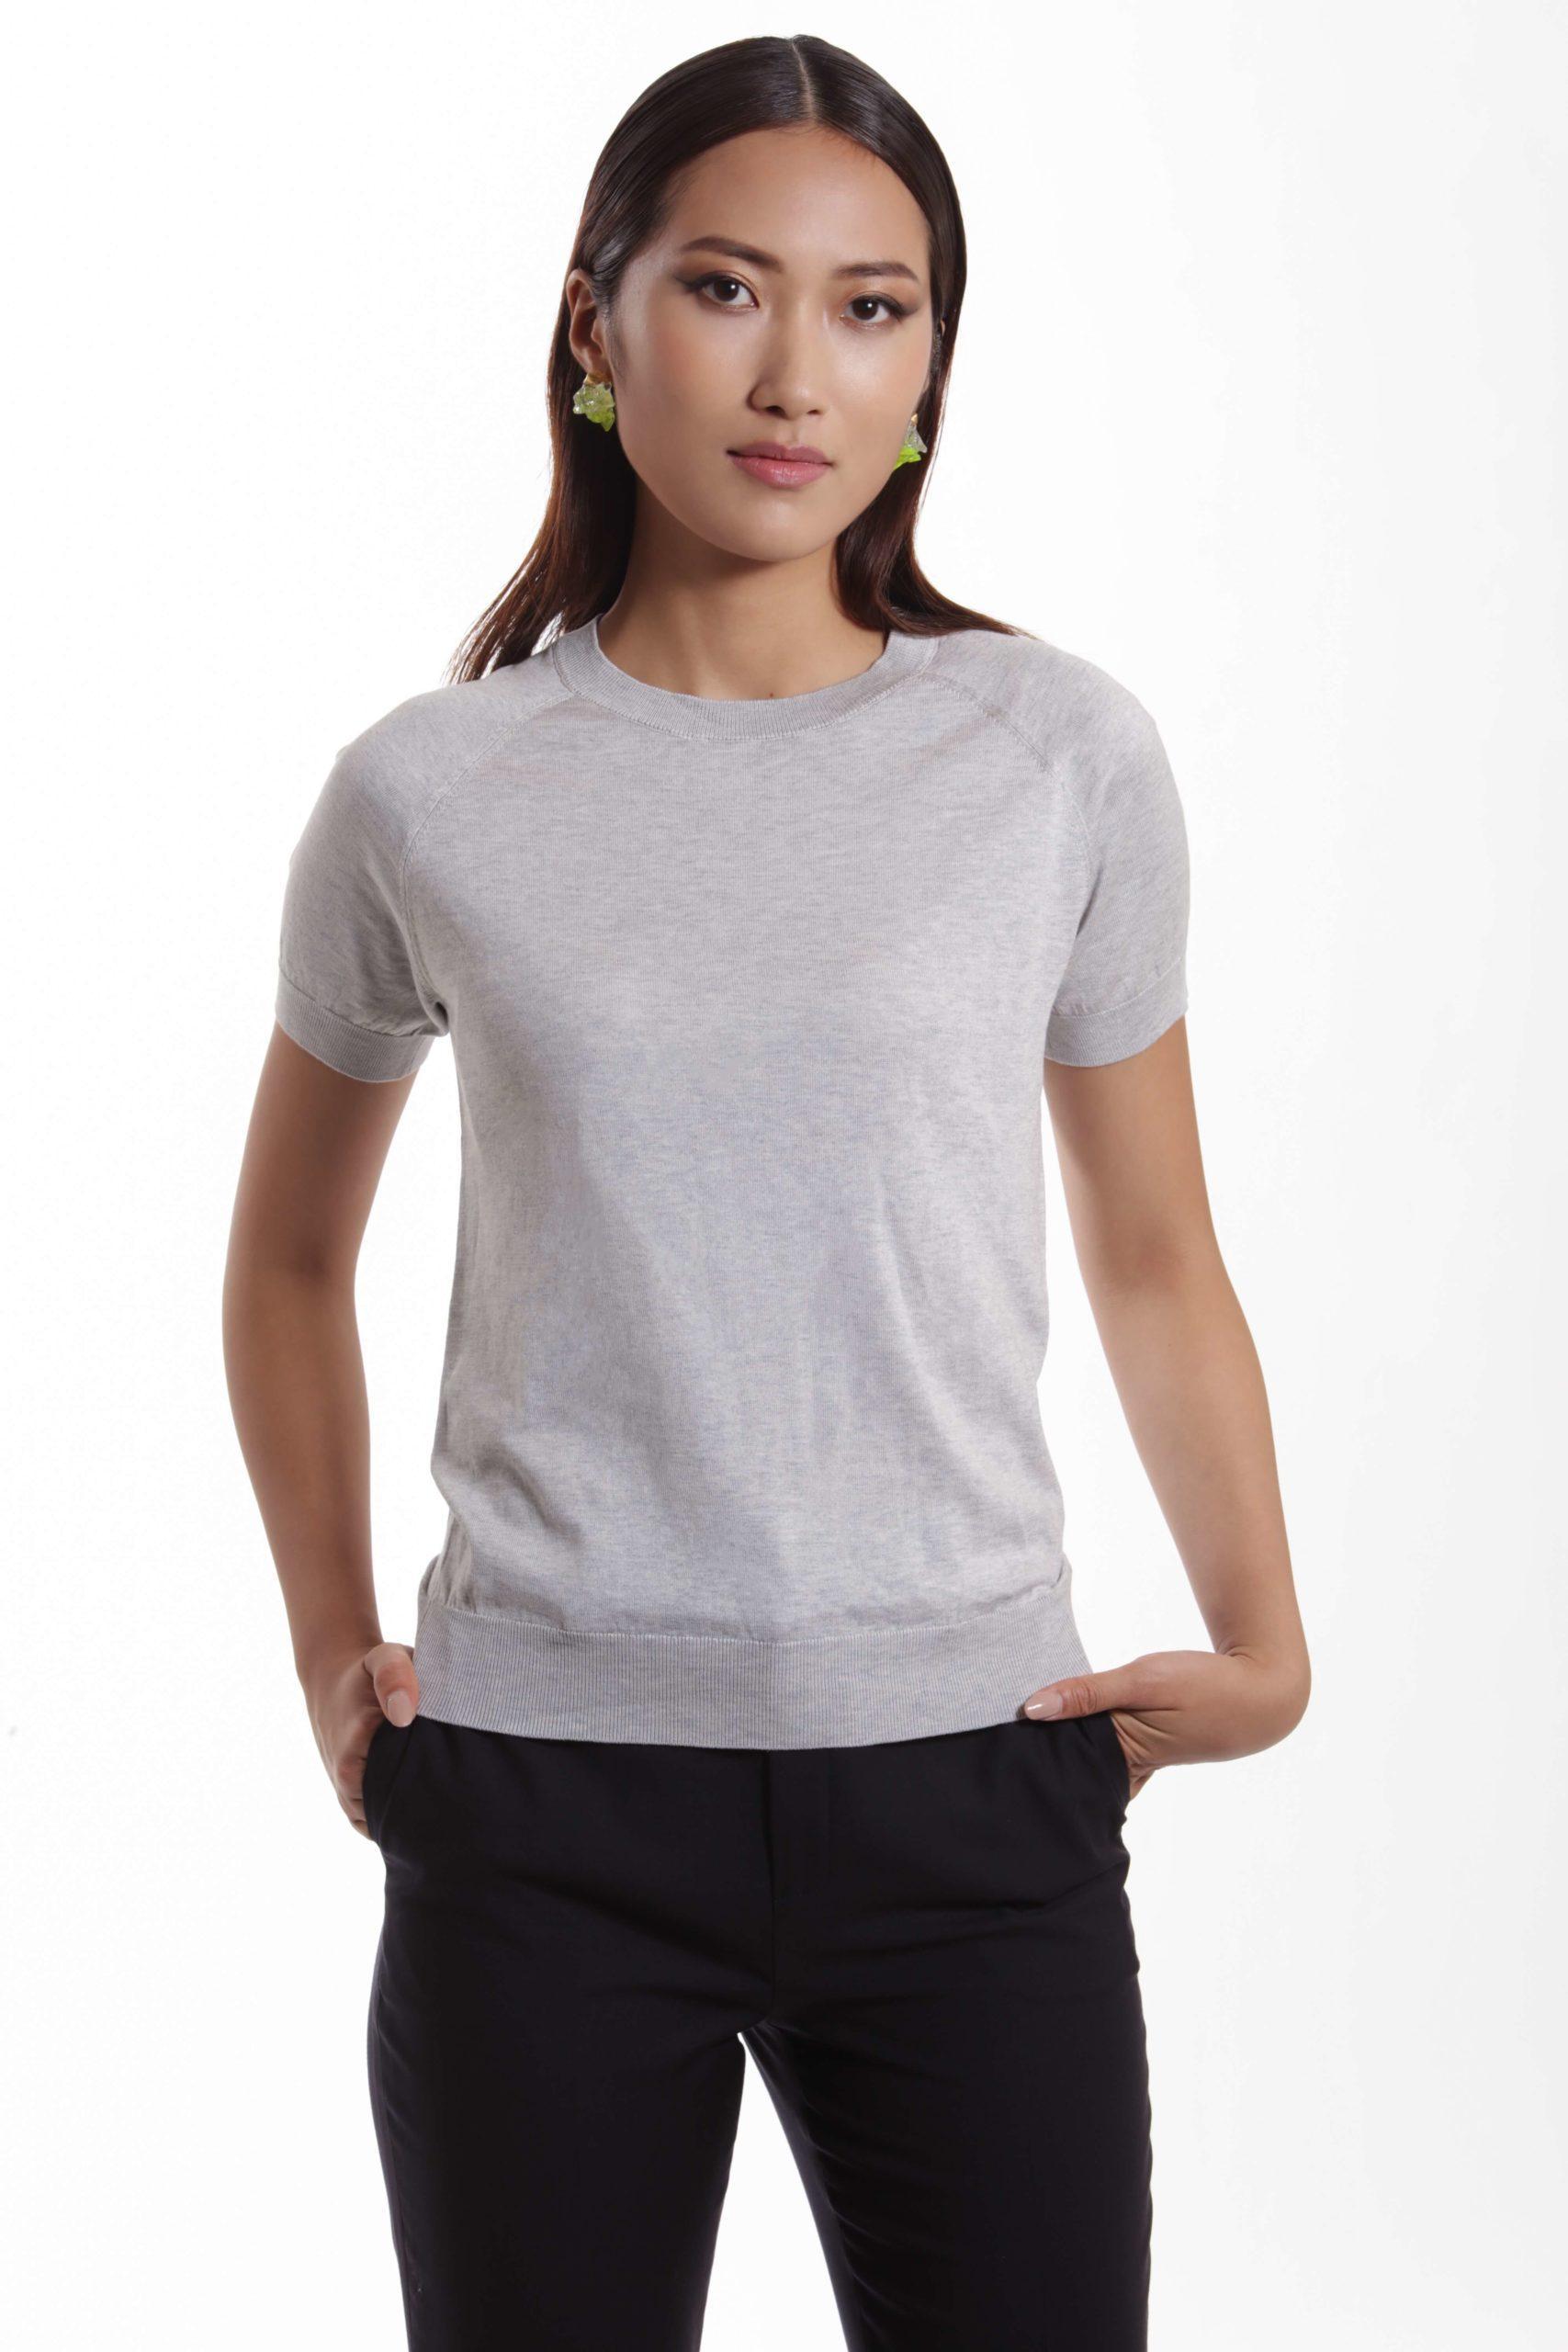 Lourdes – Short sleeve cotton-silk t-shirt in grey